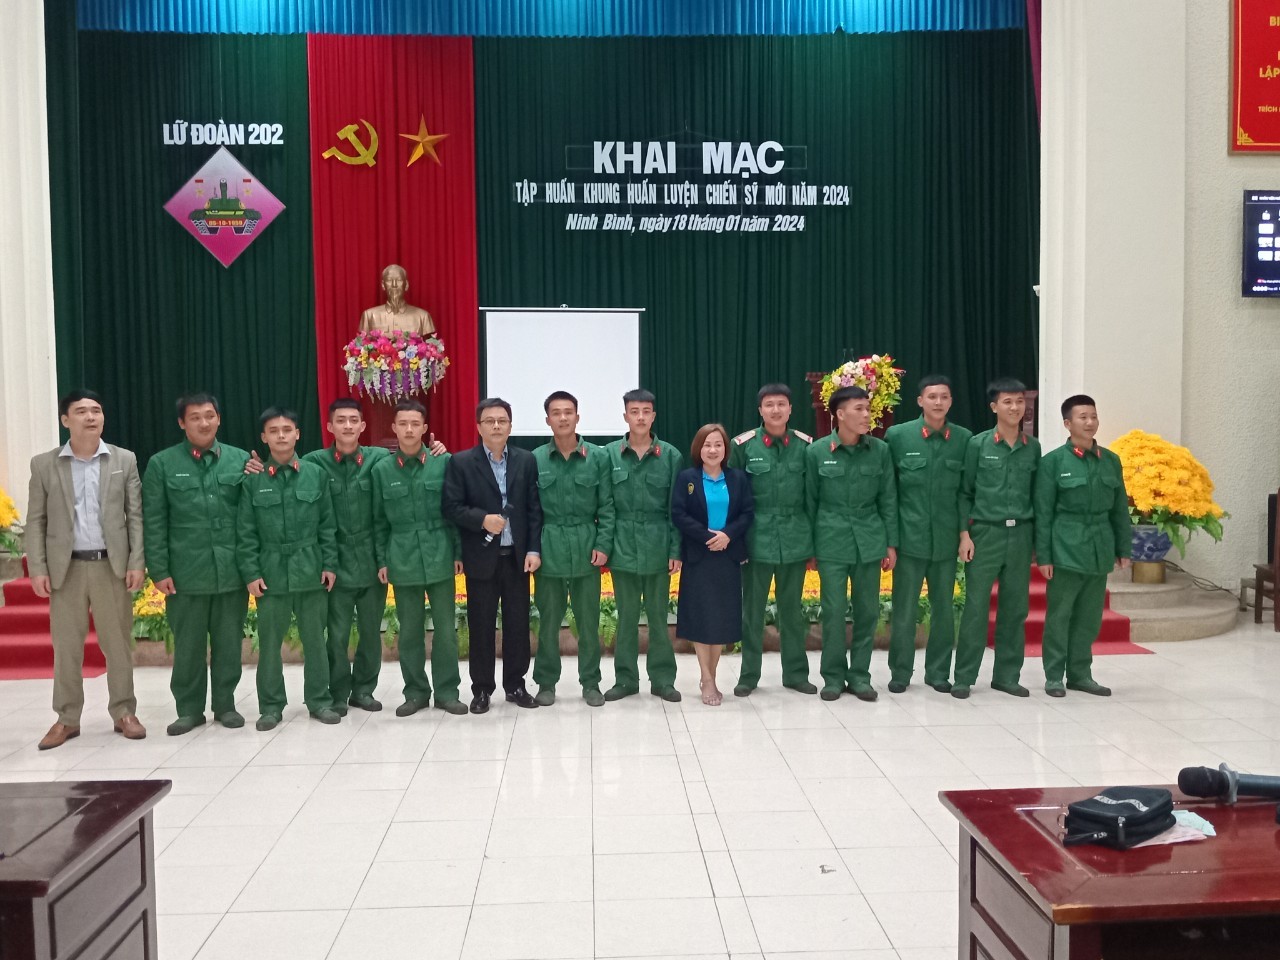 TTCUNL- Cơ hội việc làm ngành hàng không cho hạ sỹ quan, chiến sỹ Lữ đoàn 202 Tăng thiết giáp Tam Điệp, Ninh Bình